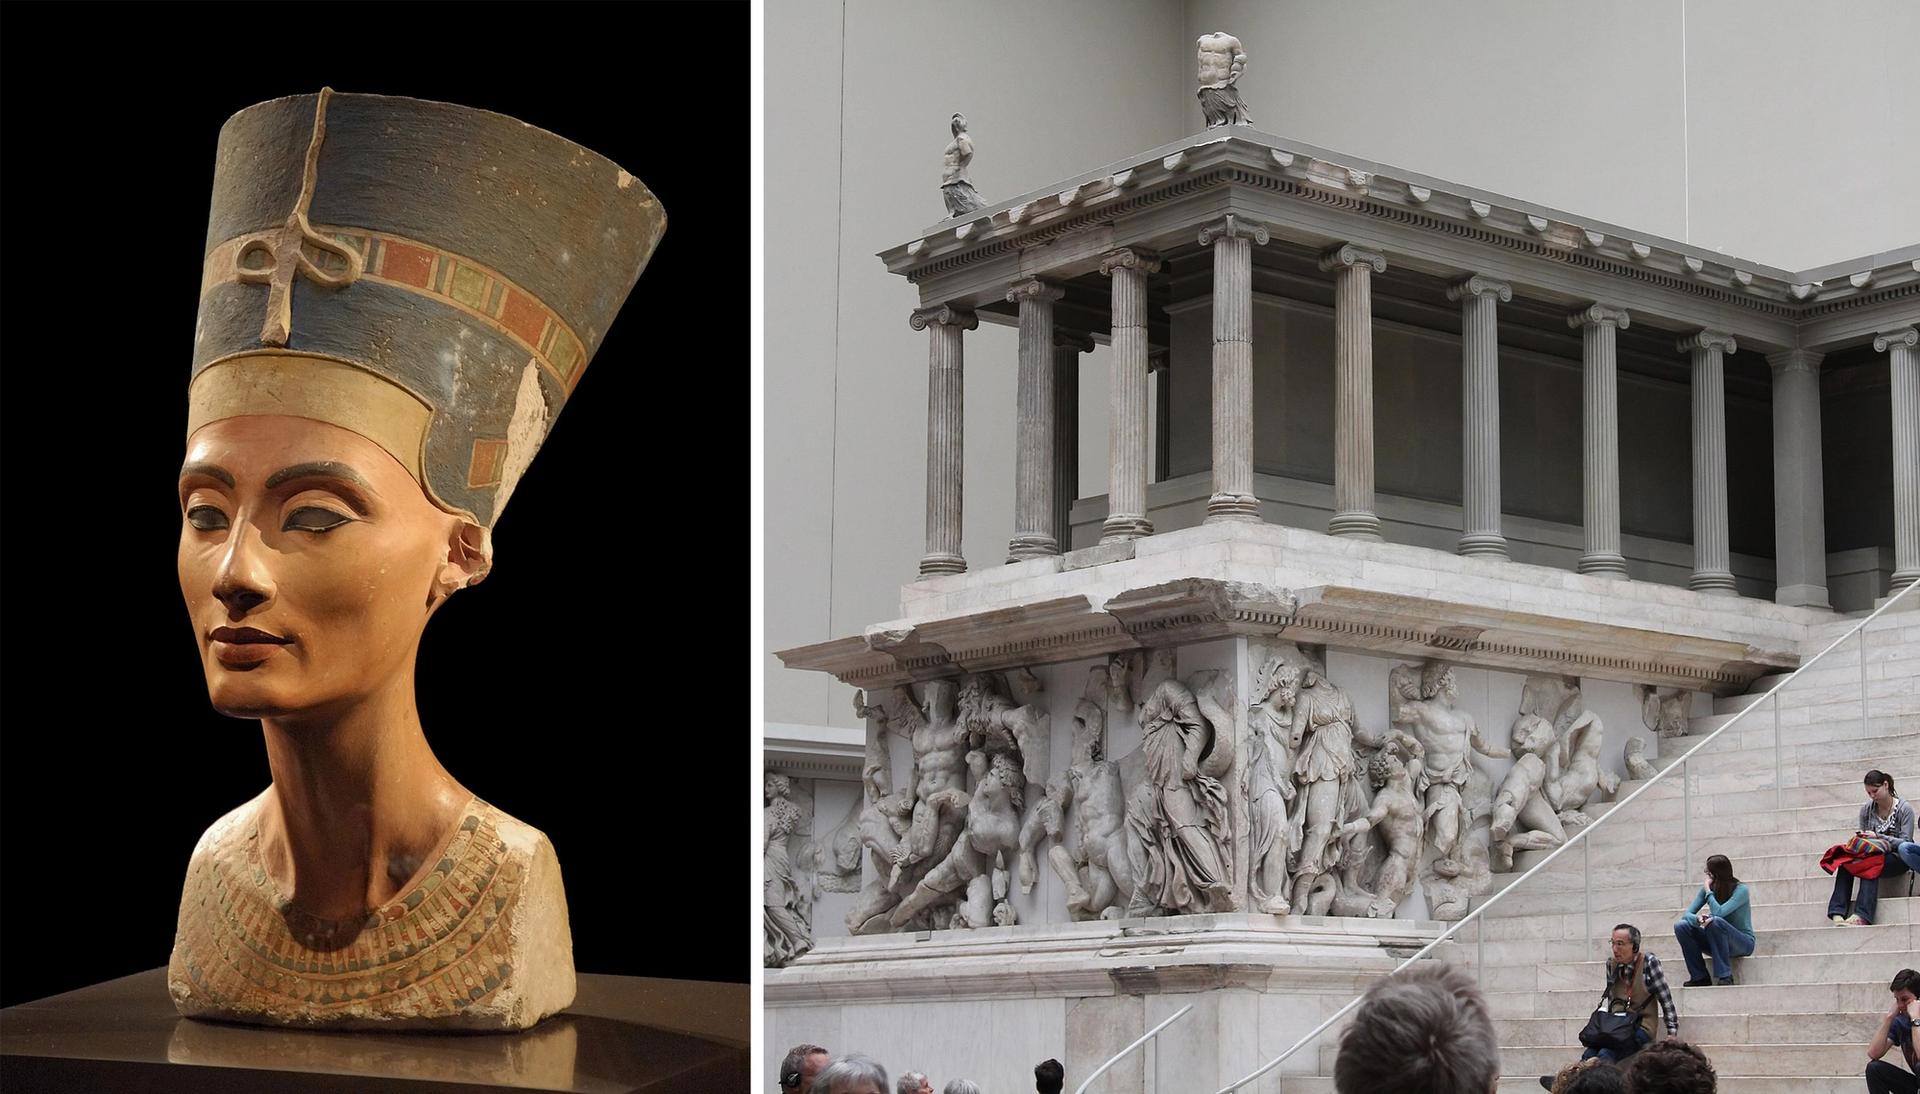 Nefertiti: Philip Pikart; Altar: Tilemahos Efthimiadis